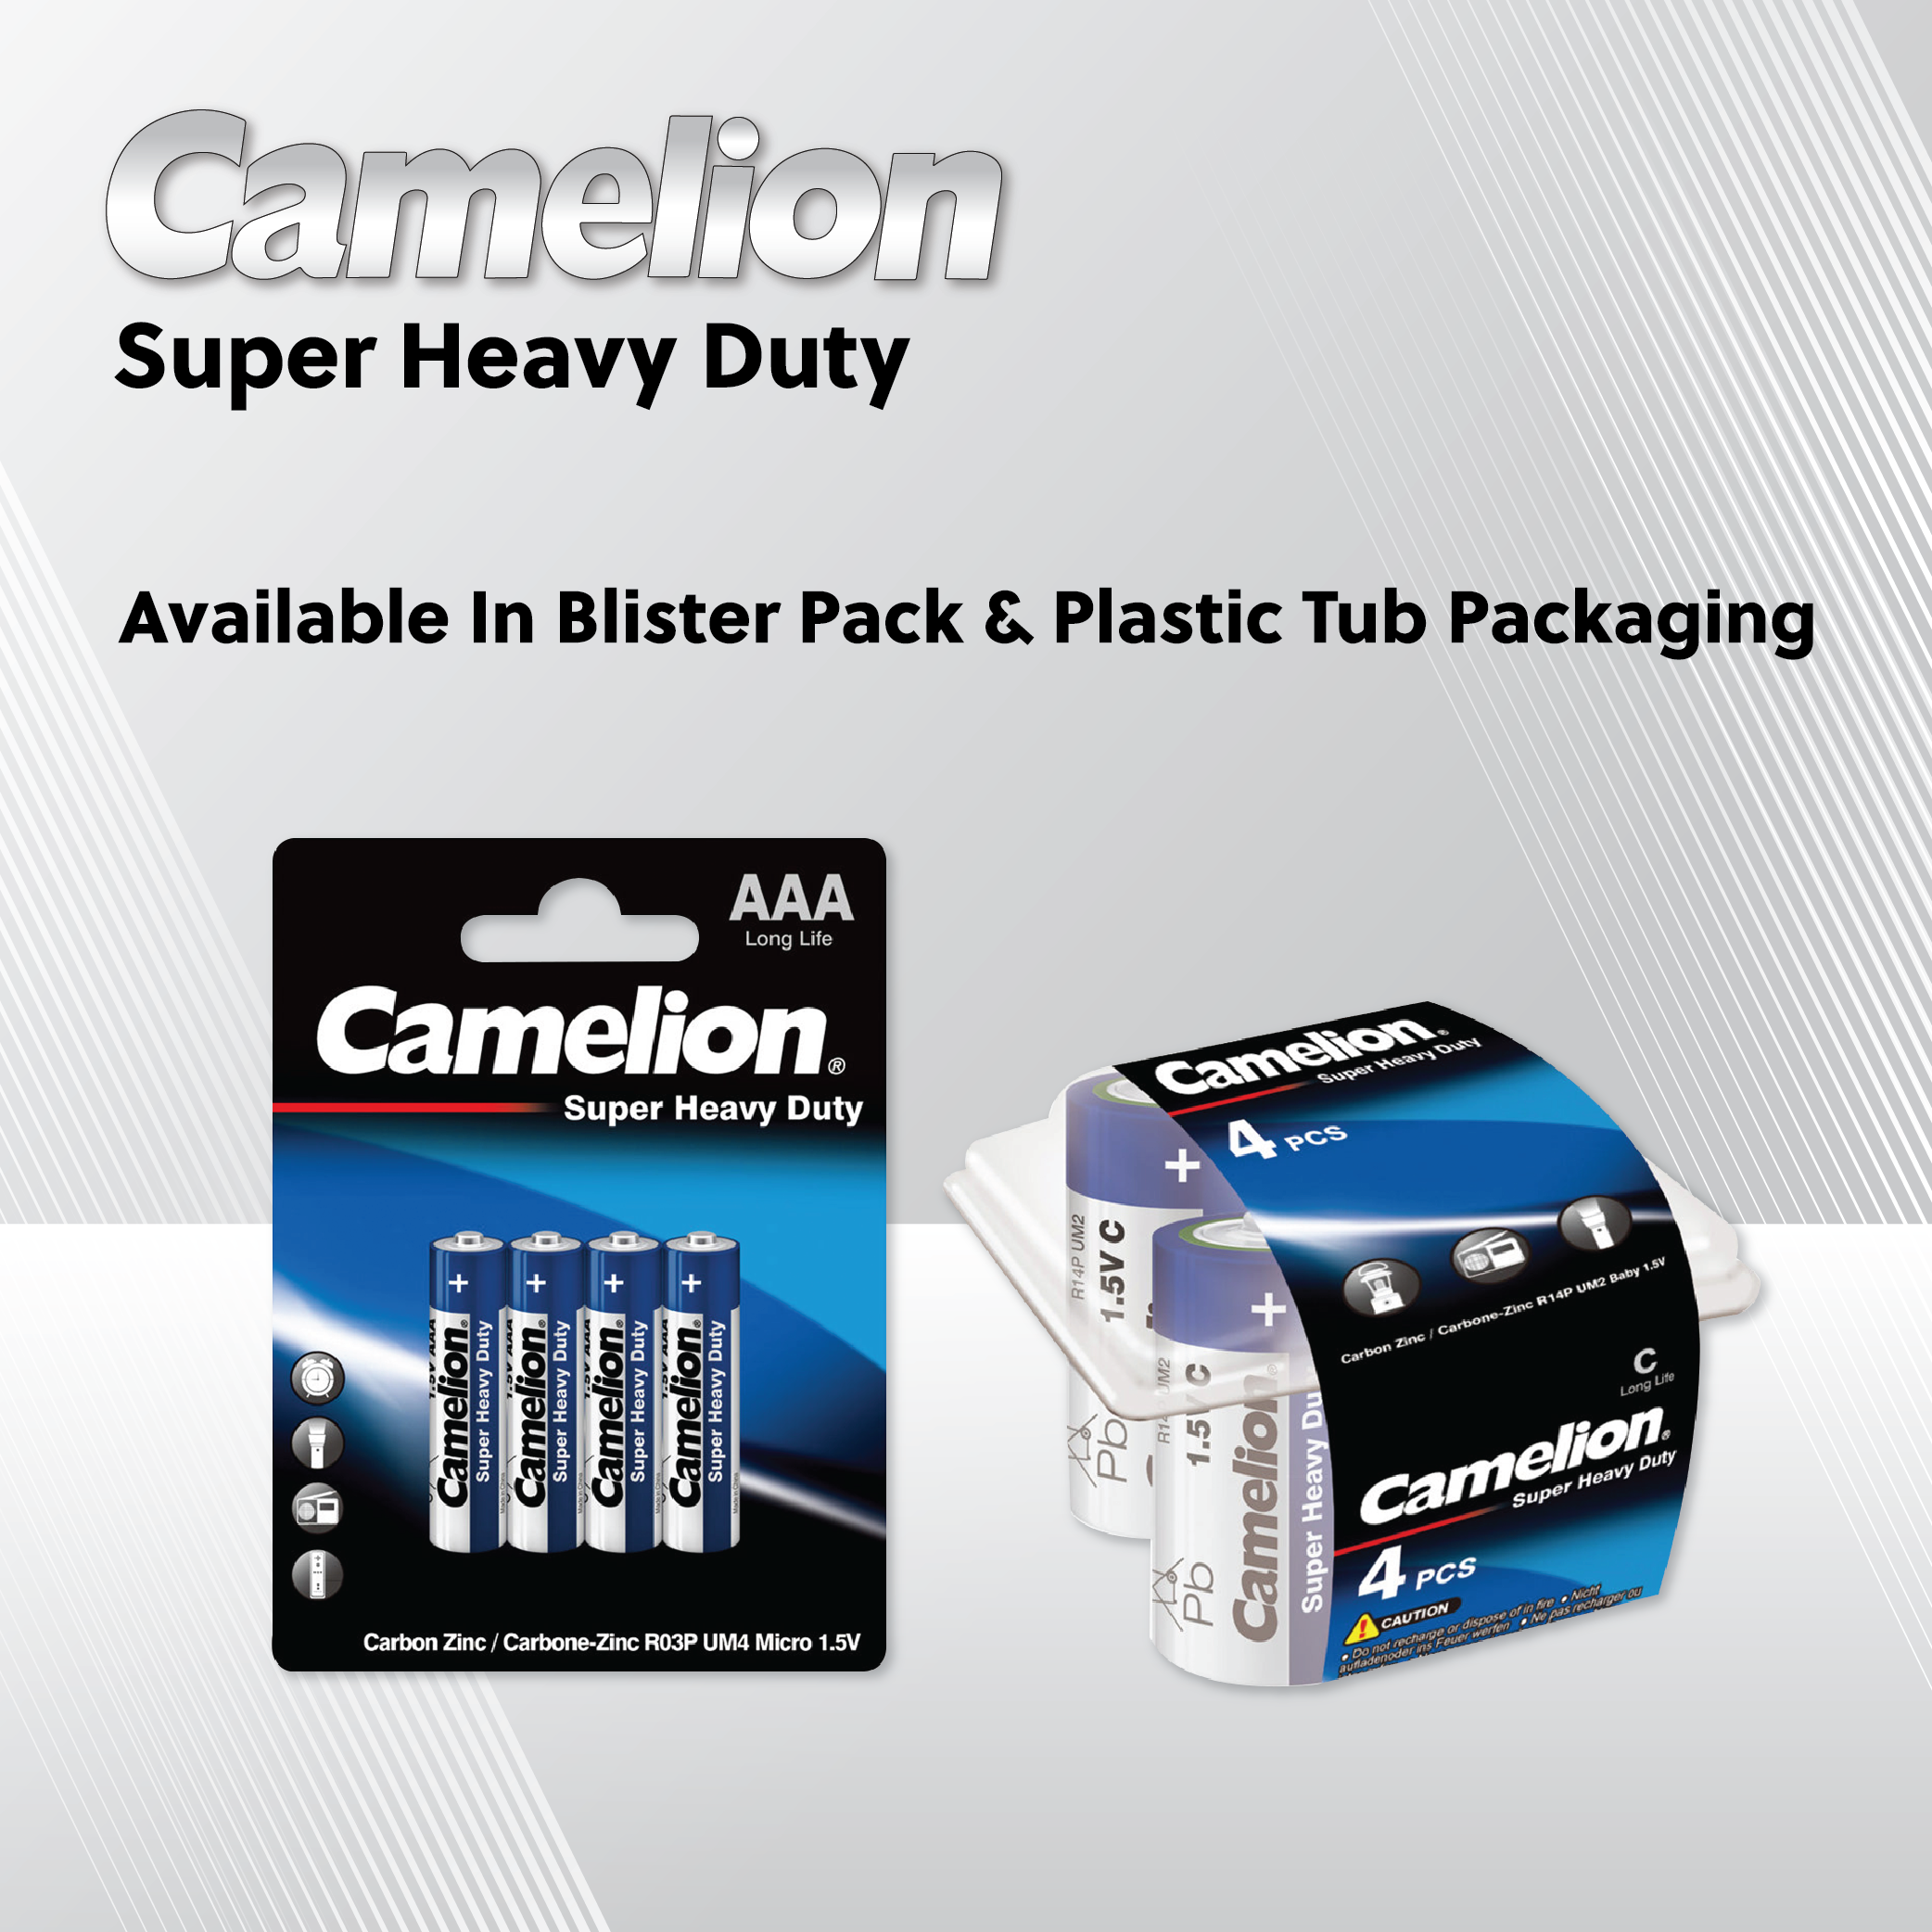 Camelion D Super Heavy Duty 2pk (CLOSEOUT) (EXP 10/23)